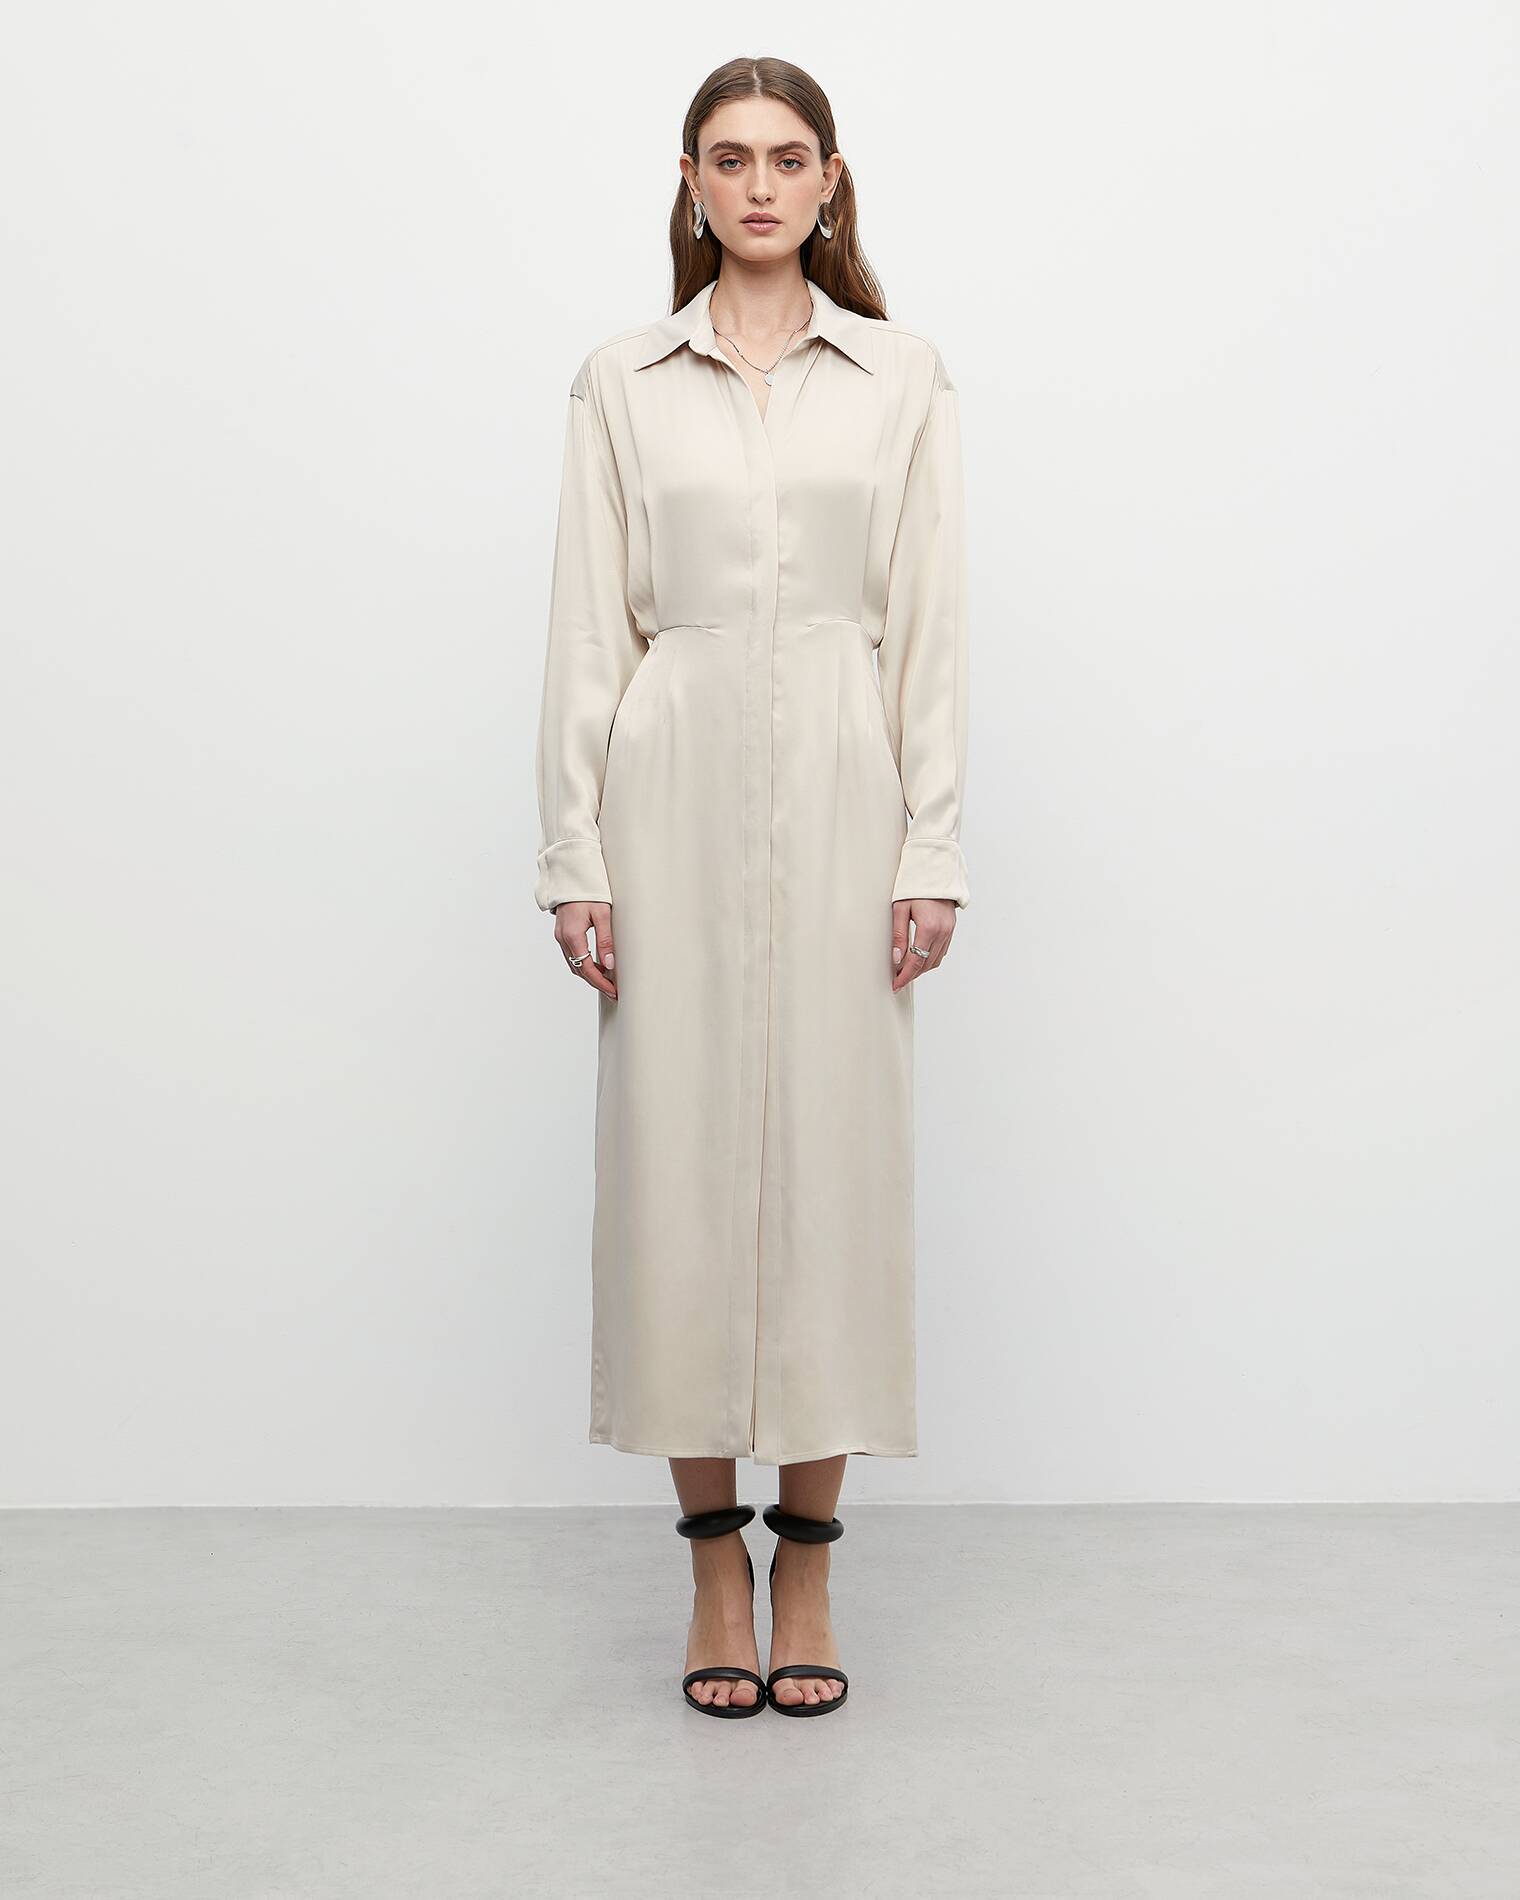 Платье женское I Am Studio 43-180-515-280 белое L - купить в Москве, цены на Мегамаркет | 100052154900